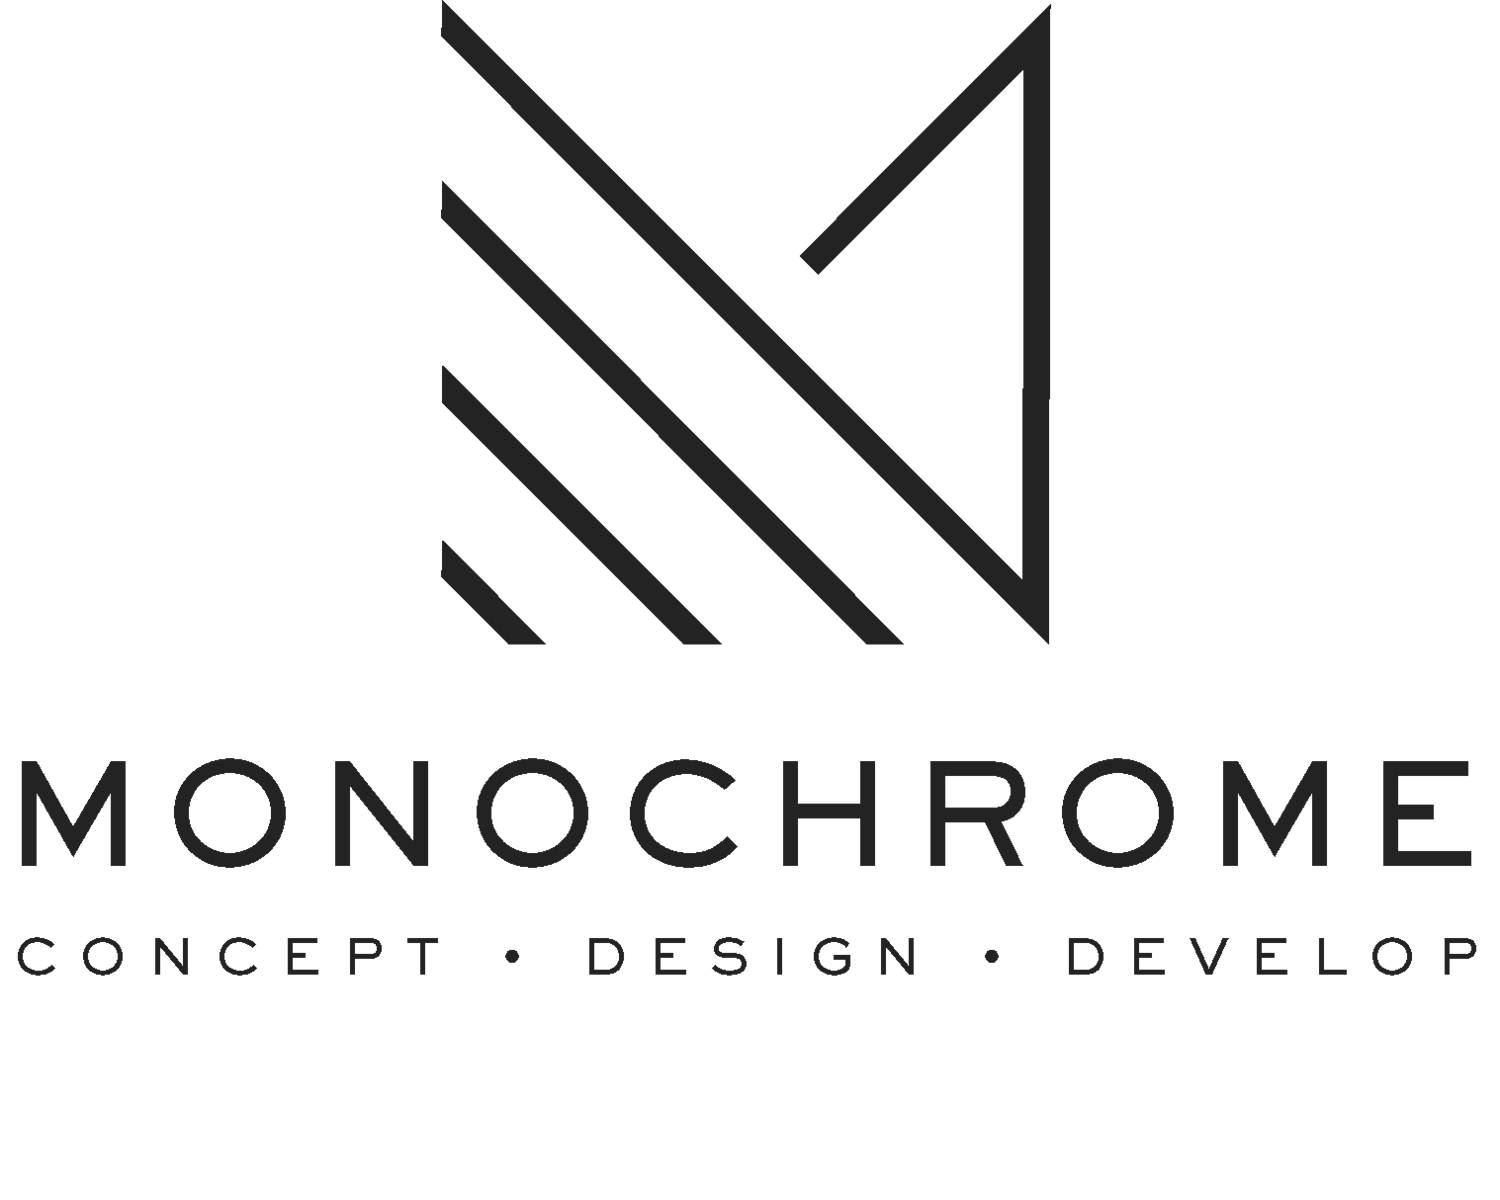 Monochrome .design